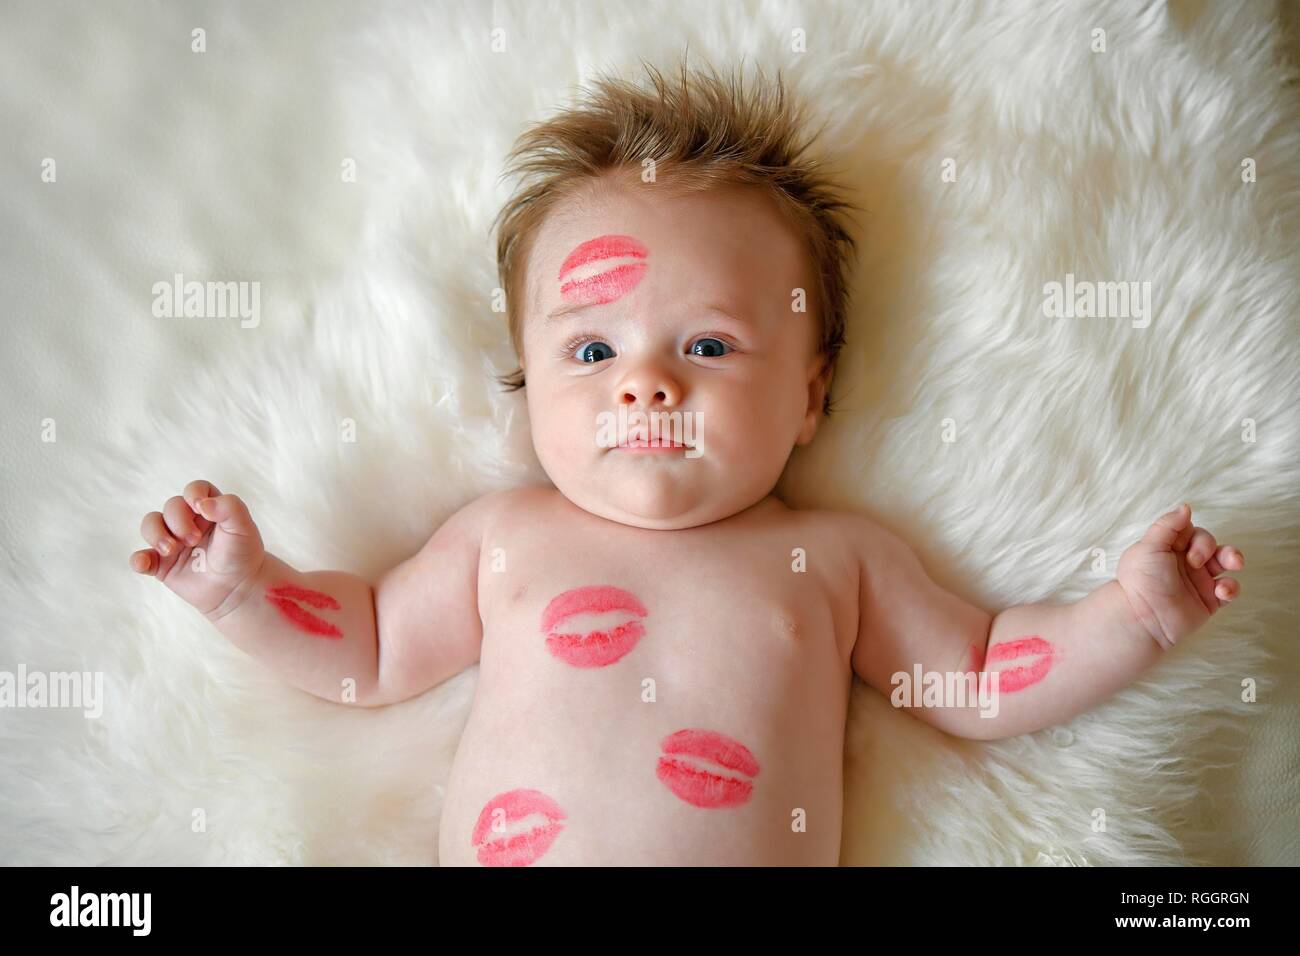 Nourrisson, trois mois, avec des baisers bouche rouge se trouve sur la fourrure, portrait, Bade-Wurtemberg, Allemagne Banque D'Images